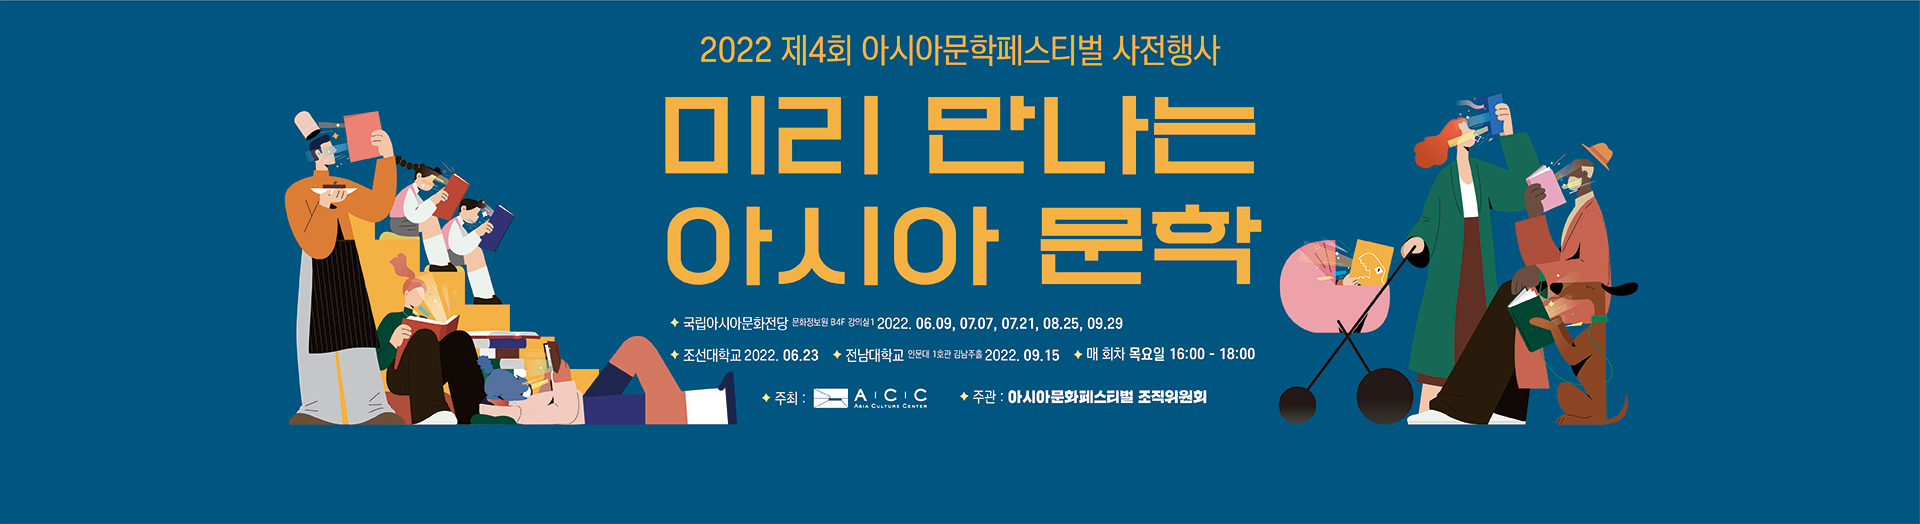 Предварительное мероприятие 4-го Фестиваля азиатской литературы 2022 г. <Предварительное знакомство с азиатской литературой>